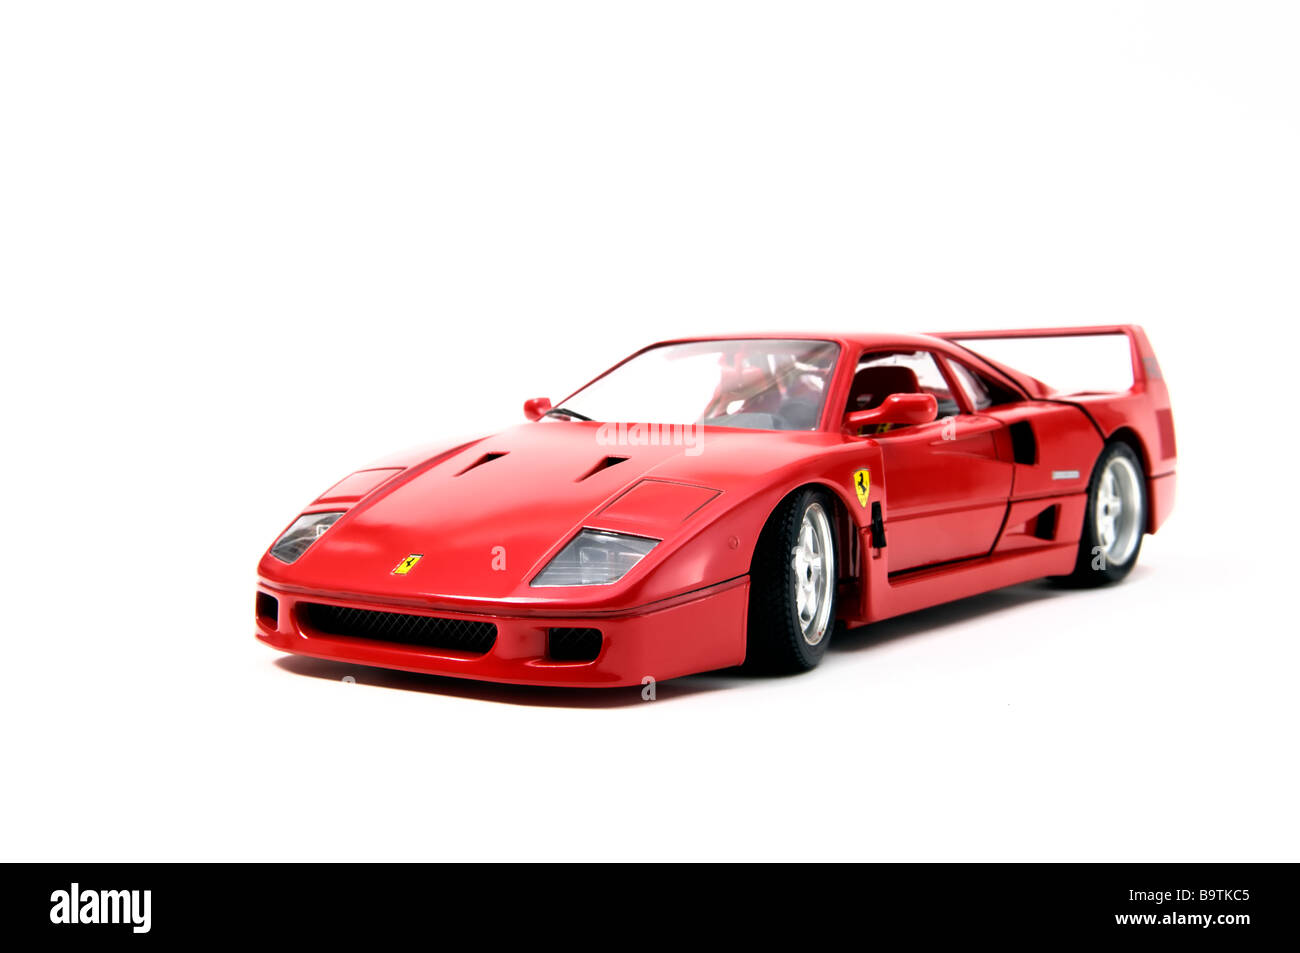 Replica in miniatura di un rosso Ferrari F40 modello monoposto realizzata dal modello del costruttore di automobili Bburago su sfondo bianco Foto Stock